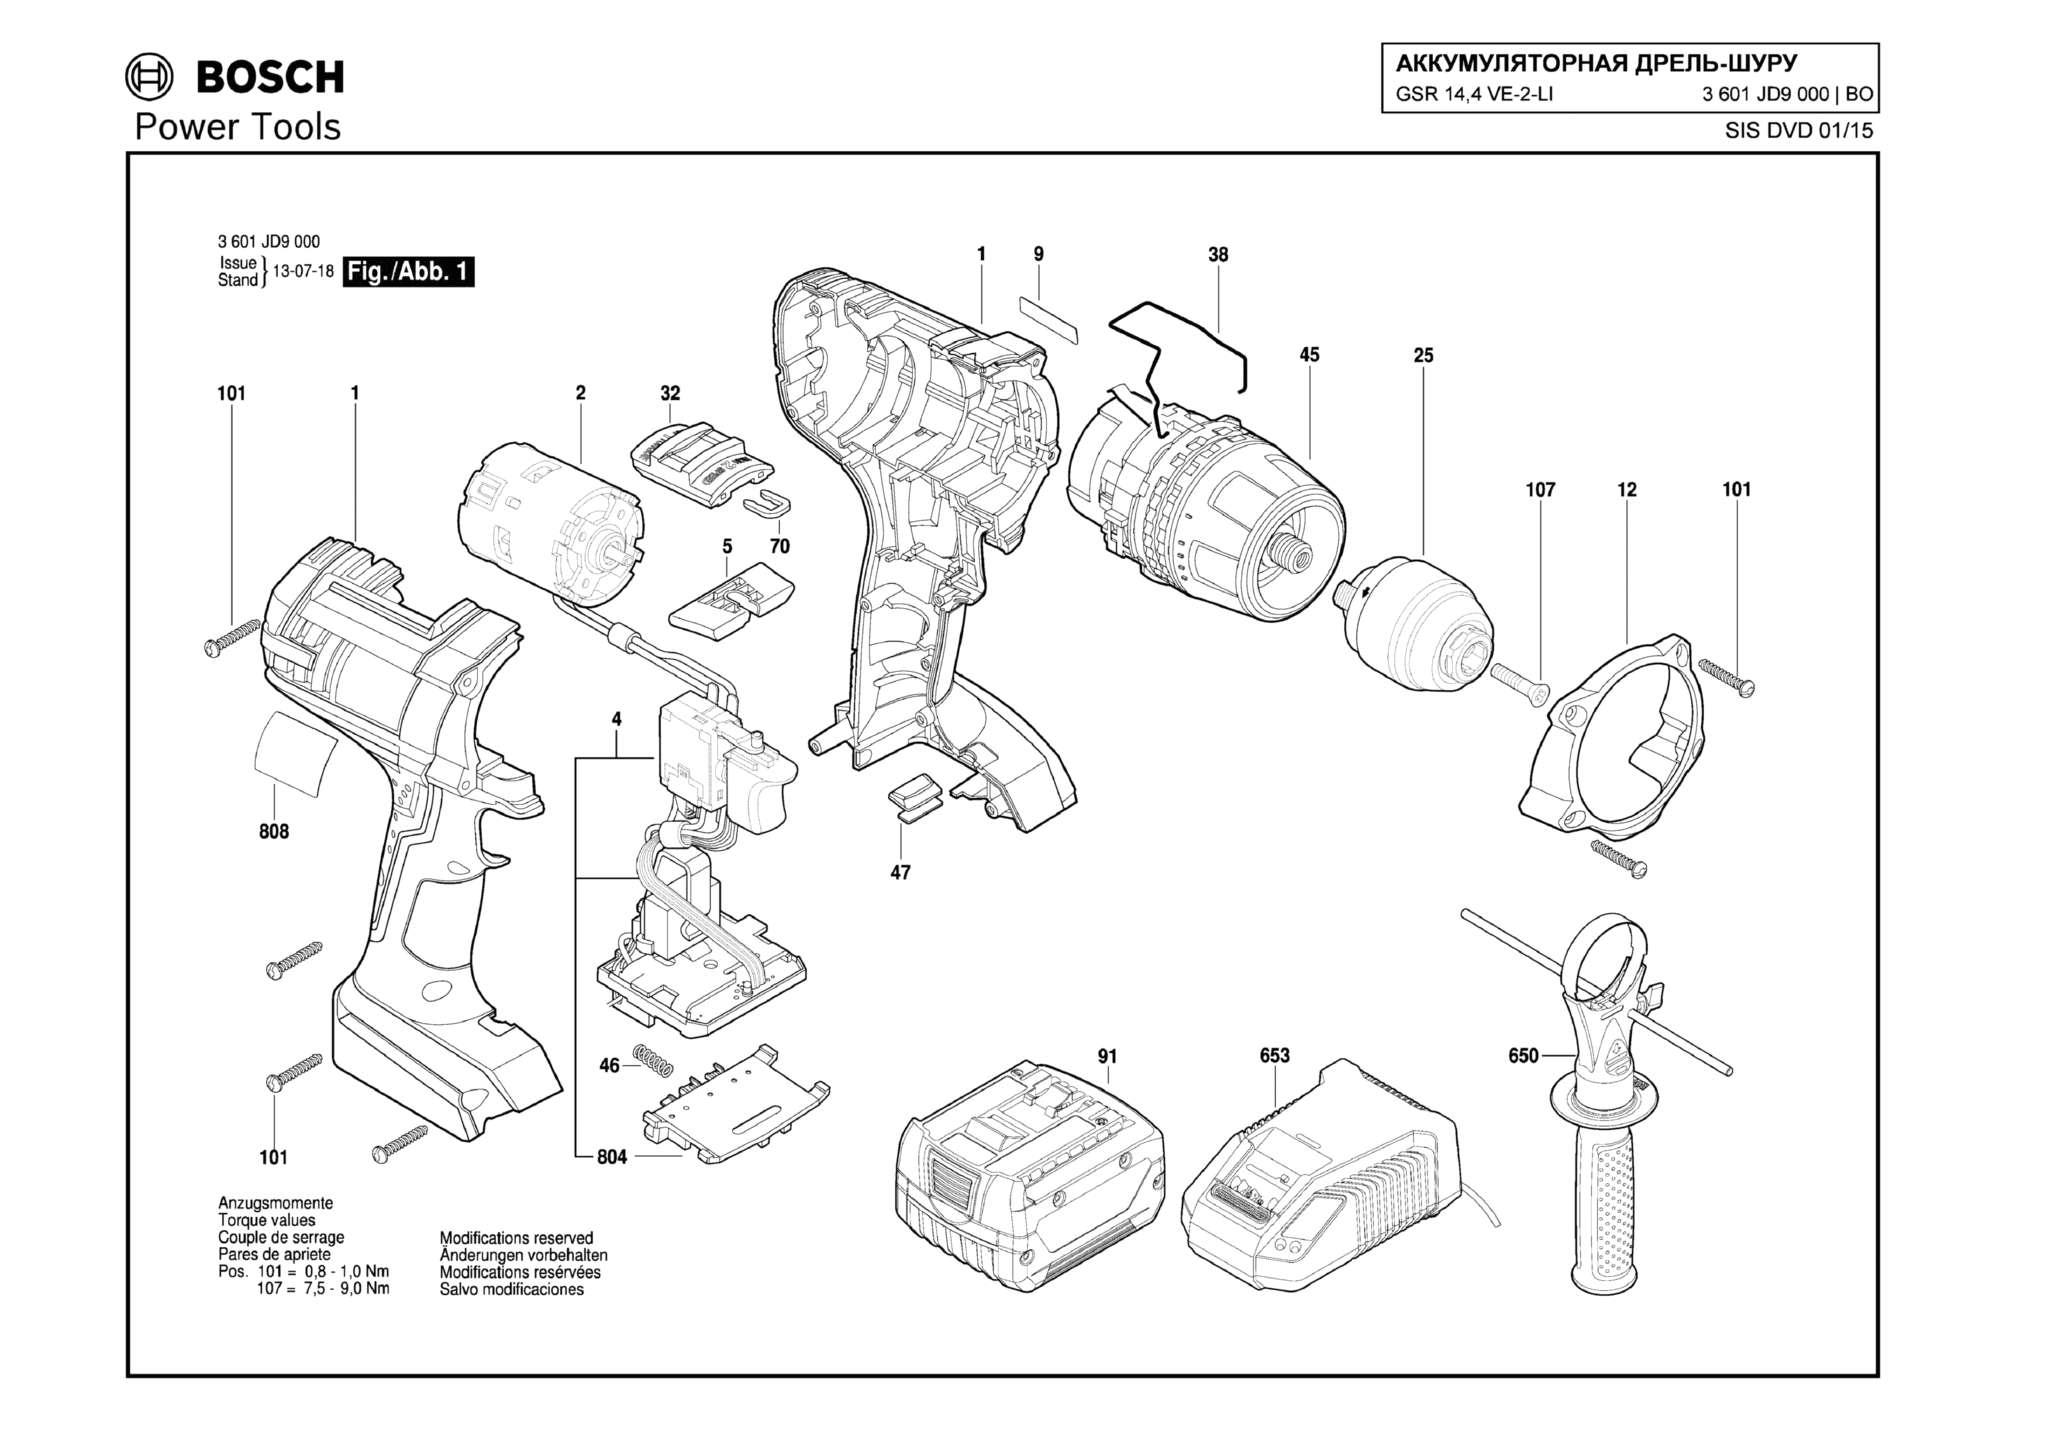 Запчасти, схема и деталировка Bosch GSR 14,4 VE-2-LI (ТИП 3601JD9000)